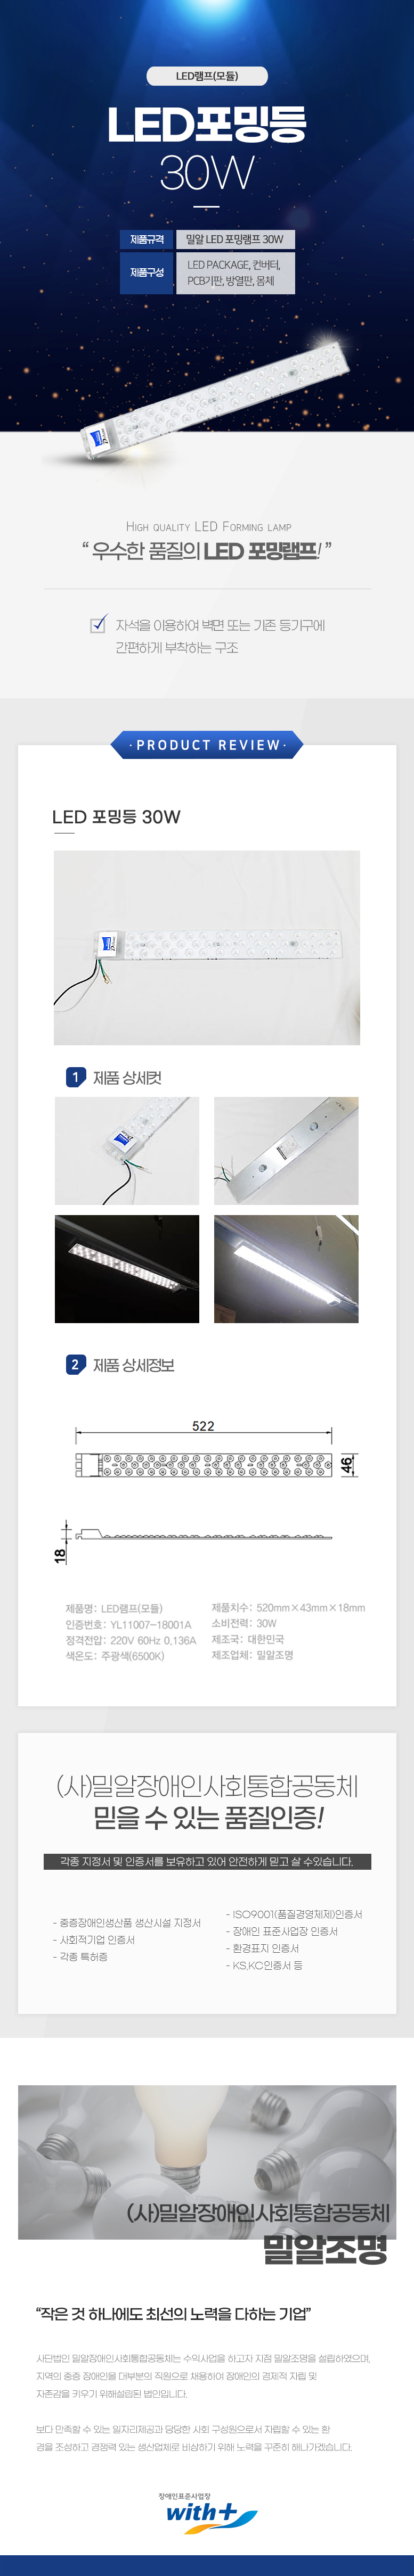 LED램프(모듈)
LED포밍등 30W

제품규격: 밀알 LED포밍램프 30W
제품구성: LED PACKAGE, 컨버터,PCB기판,방열판, 몸체

HIGH QUALITY LED FORMING LAMP
'우수한 품질의 LED 포밍램프!'

자석을 이용하여 벽면 또는 기존 등기구에 간편하게 부착하는 구조

PRODUCT REVIEW
LED 포밍등 30W

1 제품상세컷
2 제품상세정보
가로:522mm,세로: 46mm

제품명: LED램프(모듈)
제품치수: 520mm×43mmX18mm
인증번호: YL11007-18001A 
소비전력: 30W
정격전압: 220V 60Hz 0.136A 
제조국: 대한민국 
색온도: 주광색(6500K)
제조업체: 밀알조명

(사)밀알장애인사회통합공동체 
믿을 수 있는 품질인증!
각종 지정서 및 인증서를 보유하고 있어 안전하게 믿고 살 수있습니다.
- ISO9001(품질경영체제)인증서
- 중증장애인생산품 생산시설 지정서
- 장애인 표준사업장 인증서
- 사회적기업 인증서
- 각종 특허증
- 환경표지 인증서
- KS,KC인증서 등

(사)밀알장애인사회통합공동체 밀알조명
작은 것 하나에도 최선의 노력을 다하는 기업
사단법인 밀알장애인사회통합공동체는 수익사업을 하고자 지점 밀알조명을 설립하였으며,
지역의 중증장애인을 대부분의 직원으로 채용하여 장애인의 경제적 자립 및
자존감을 키우기 위해설립된 법인입니다.
보다 만족할 수 있는 일자리제공과 당당한 사회 구성원으로서 자립할 수 있는 환
경을 조성하고 경쟁력 있는 생산업체로 비상하기 위해 노력을 꾸준히 해나가겠습니다.

장애인표준사업장 with+